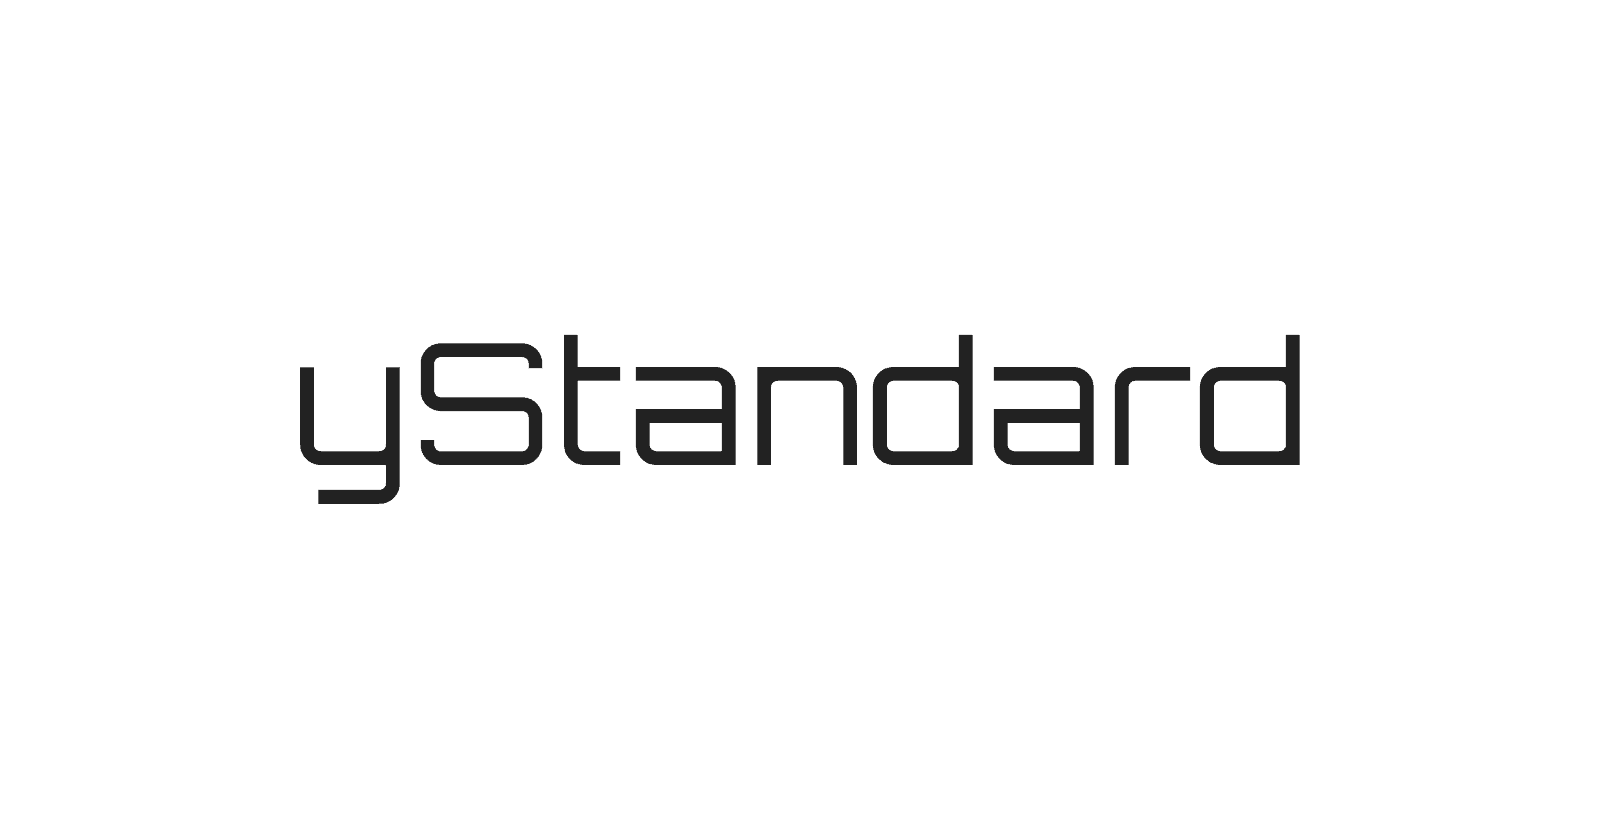 【※注意事項あり】yStandard v2.5.0 公開のおしらせ